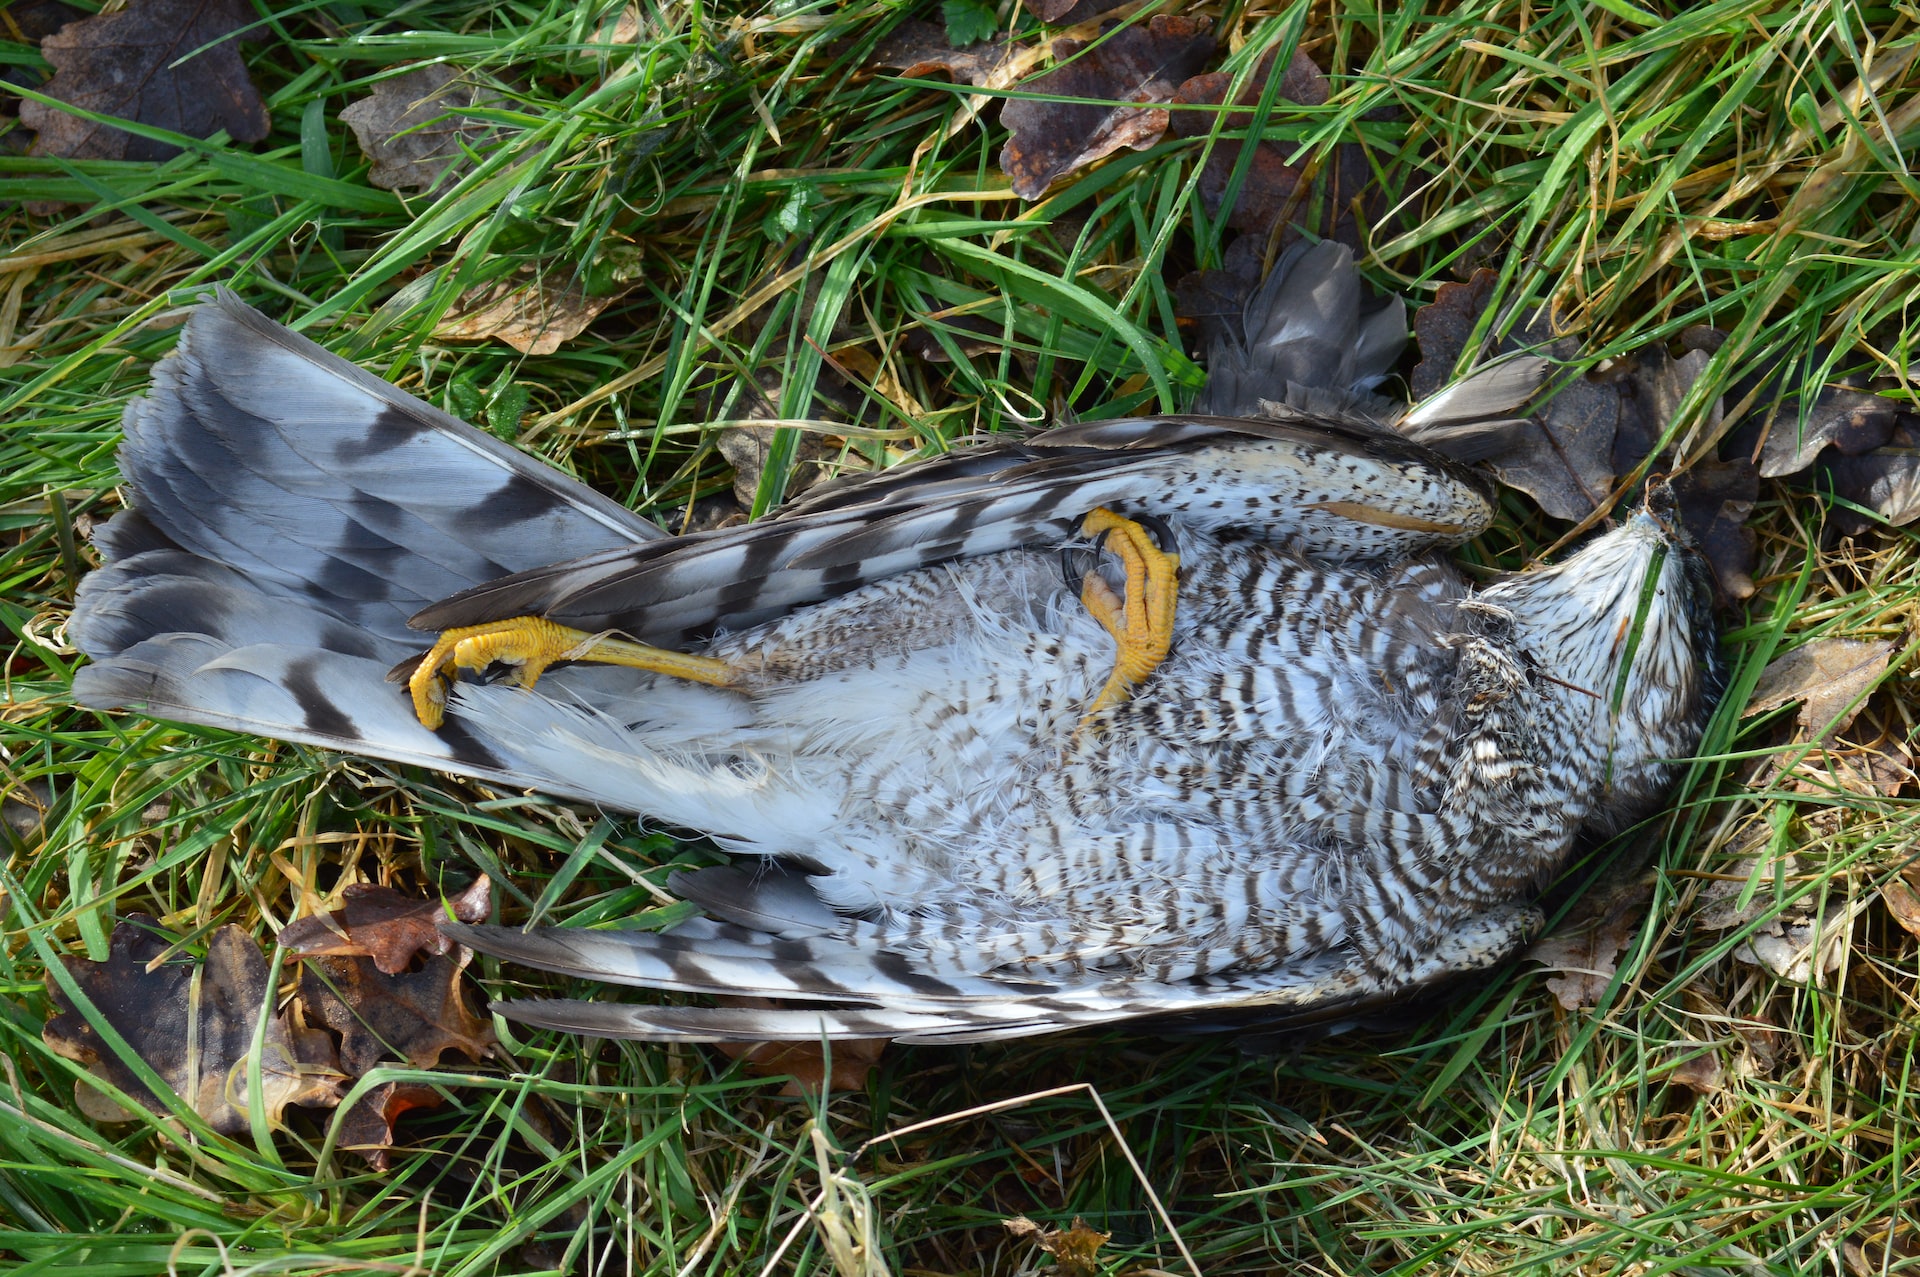 A Dead Gray Coloured Bird On The Green Grass